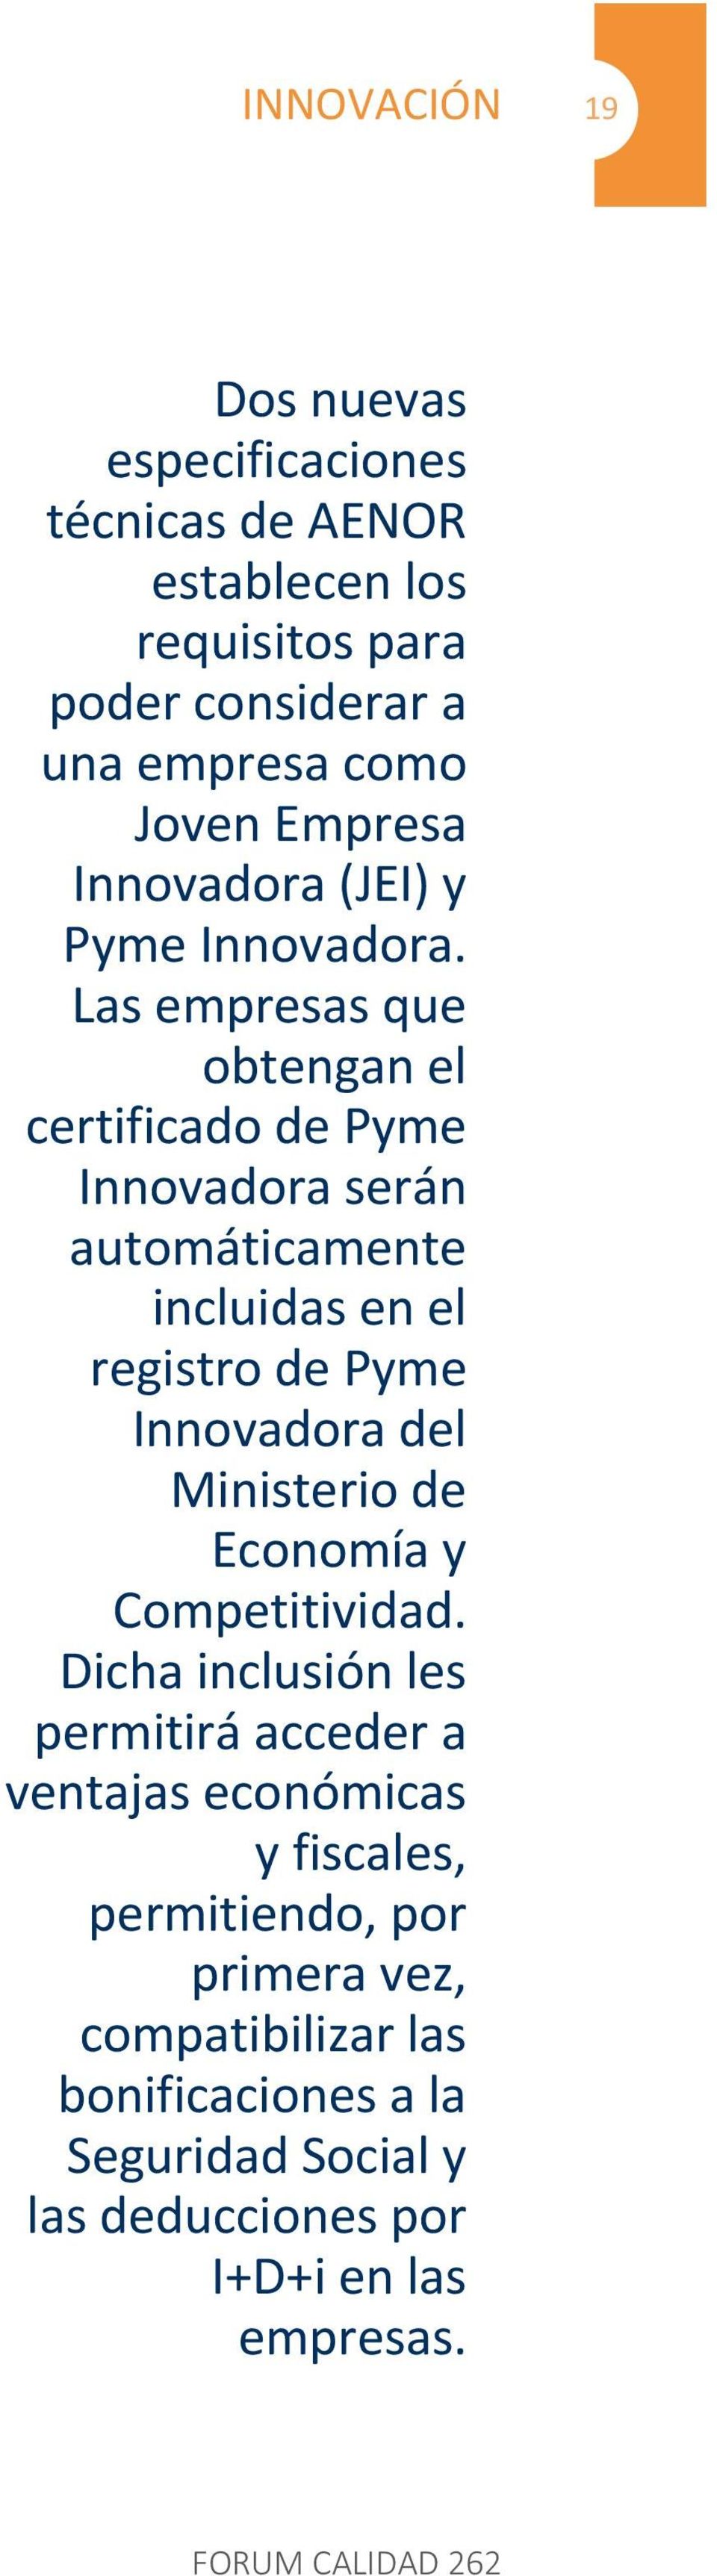 Las empresas que obtengan el certificado de Pyme Innovadora serán automáticamente incluidas en el registro de Pyme Innovadora del